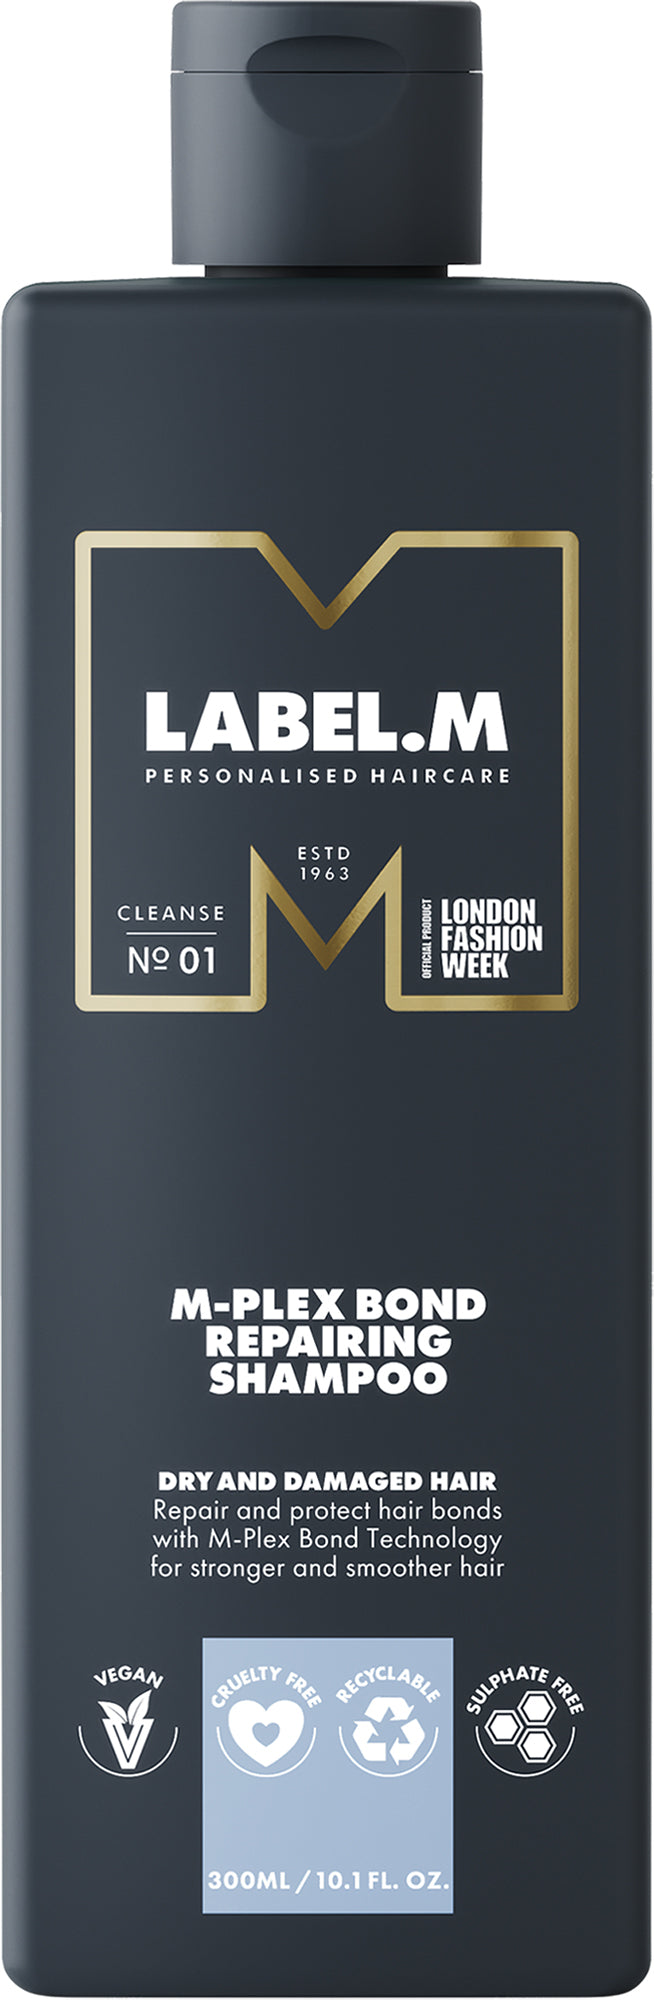 Label.m M-Plex Bond atkuriamasis šampūnas 1000 ml